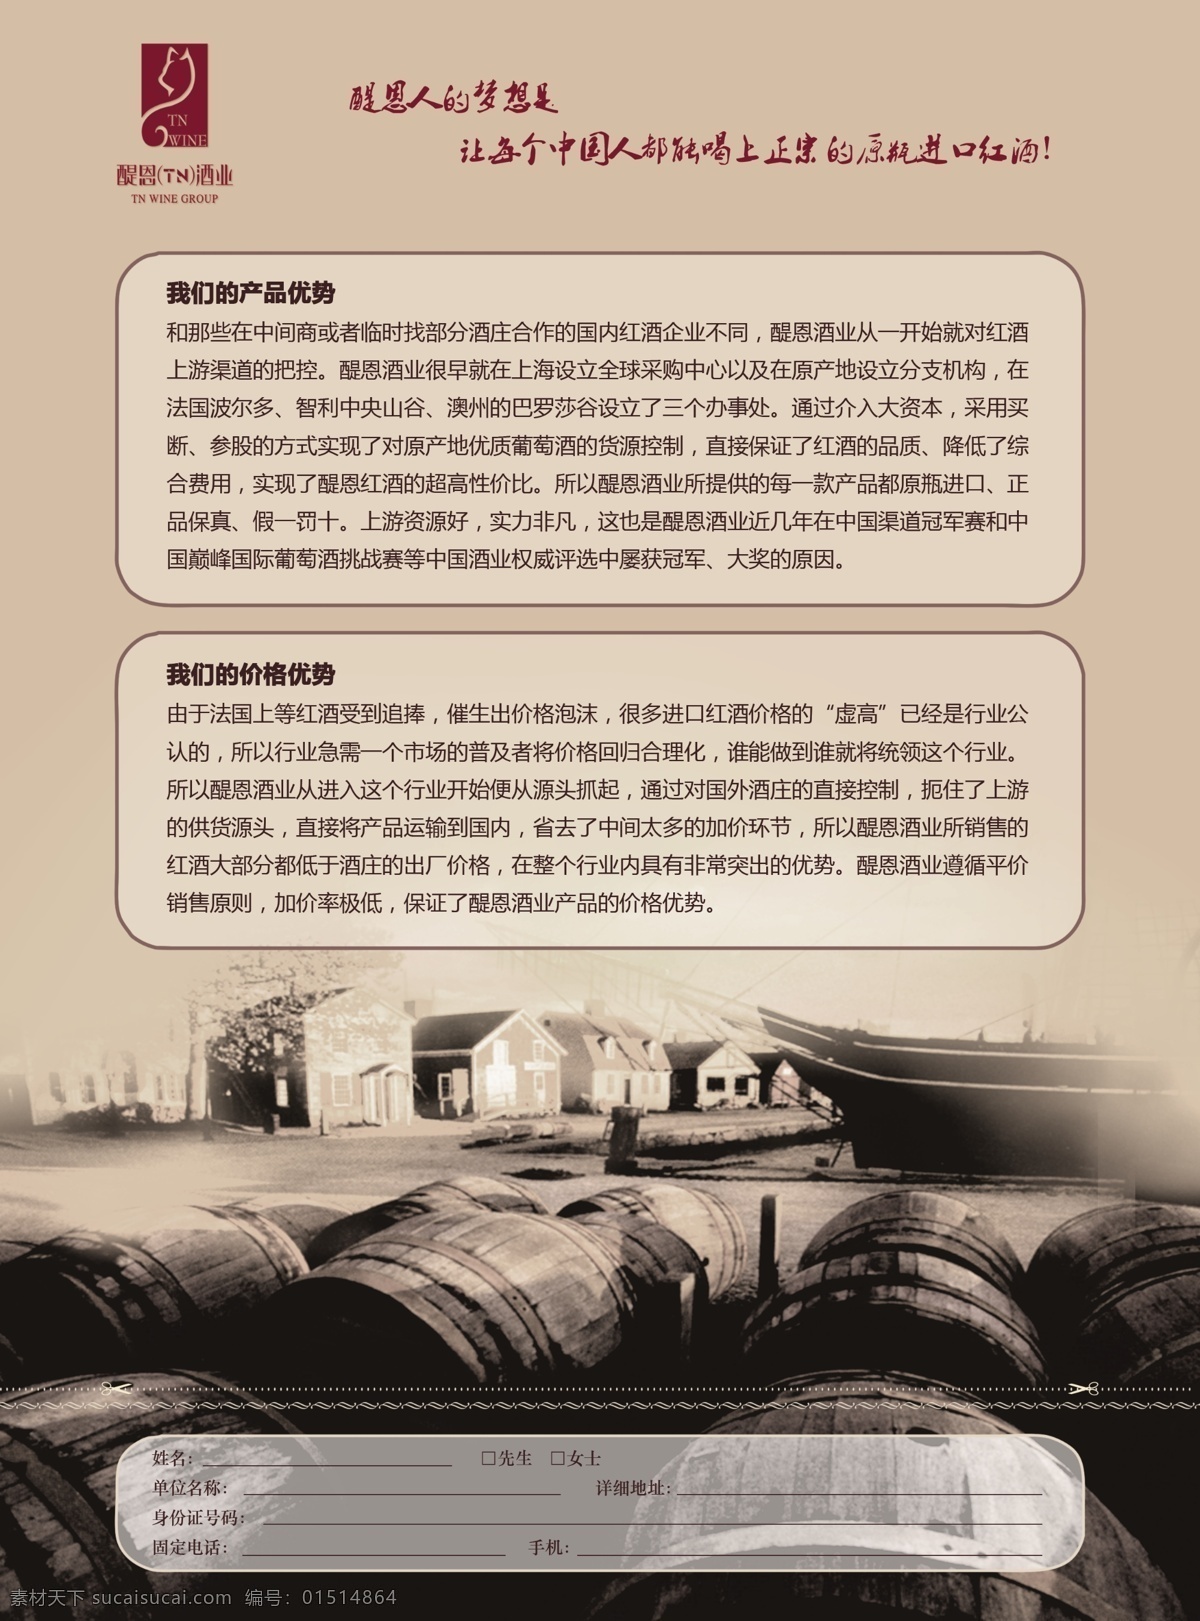 高档 红酒 宣传单 文化 彩页 模板 宣传单模板 酒窑宣传设计 红酒海报设计 广告牌模板 黑色